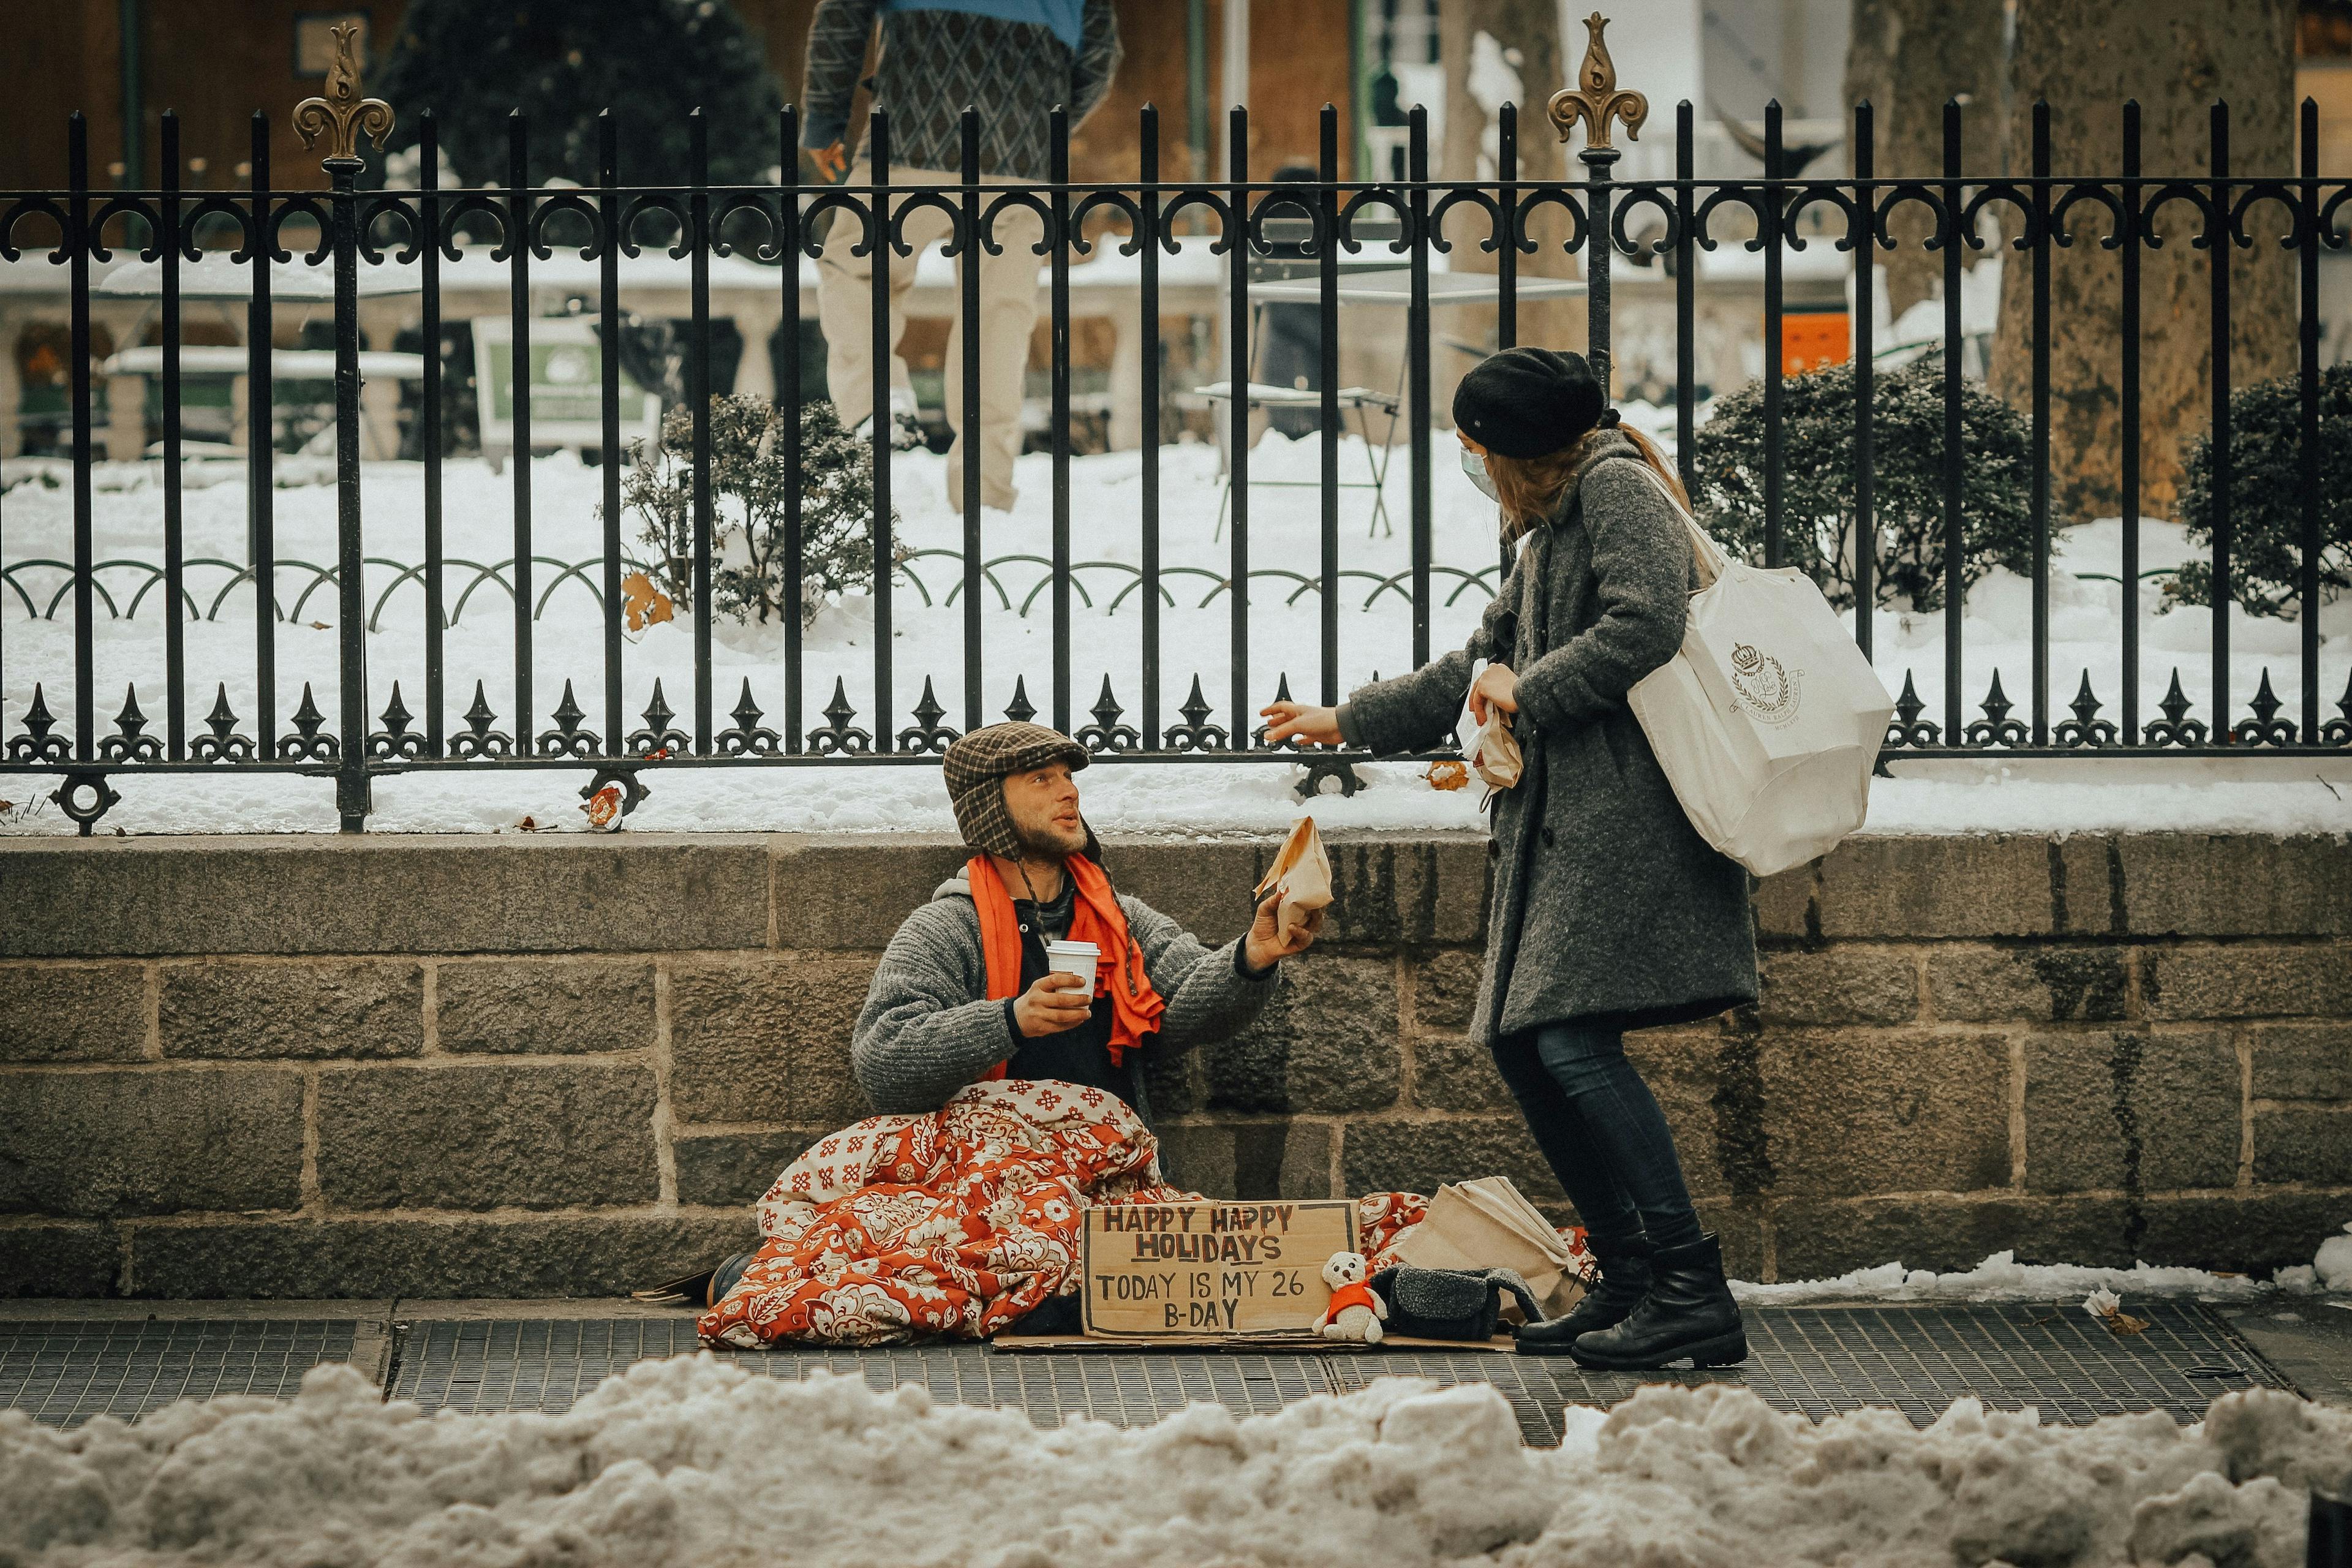 бездомный на улице получает кофе и булочку от прохожей